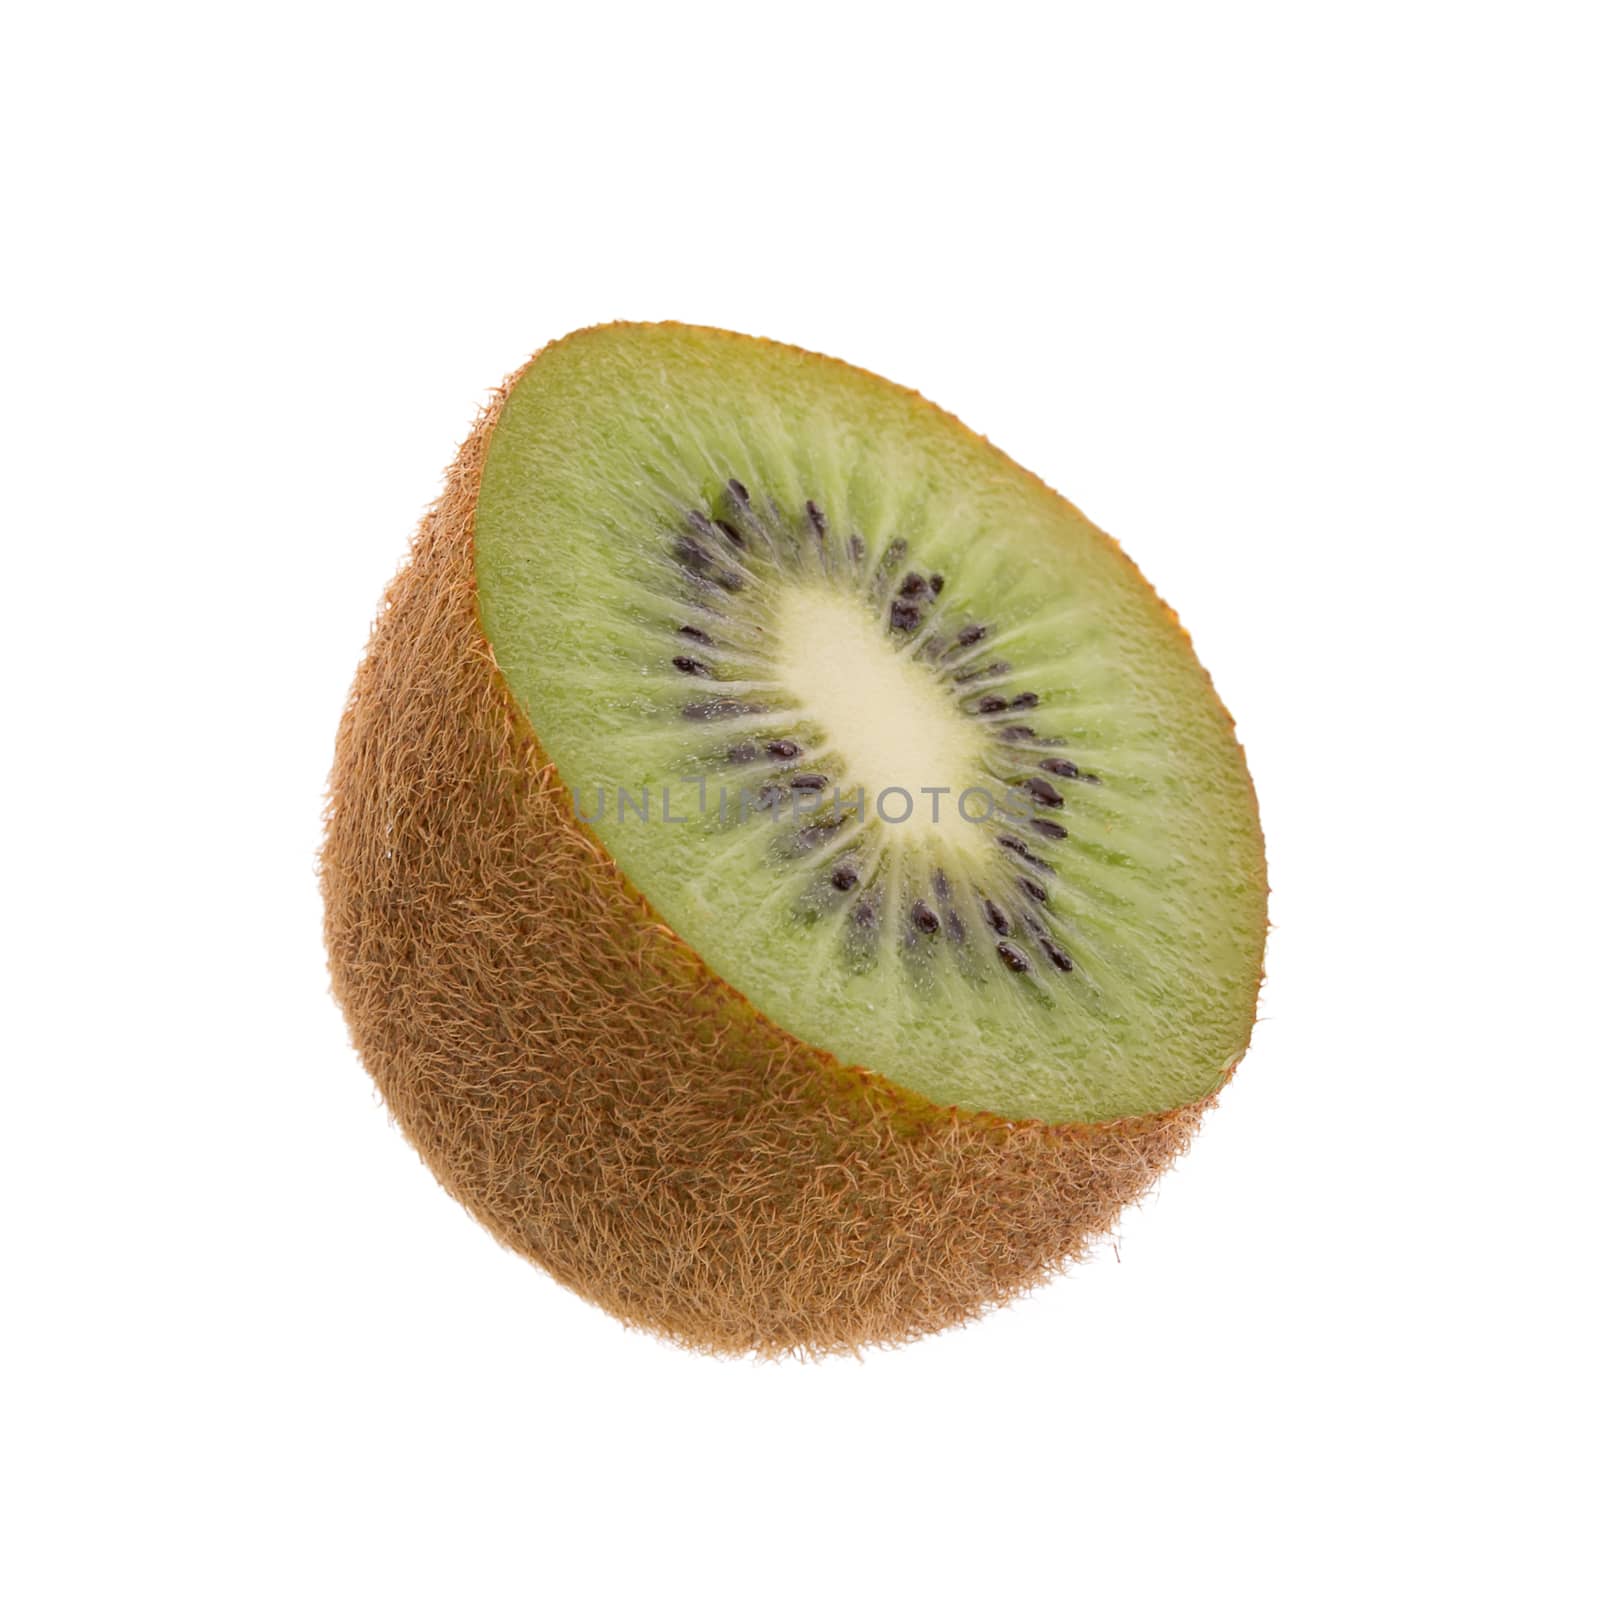 Kiwi fruit and kiwi sliced isolated on a white background by kaiskynet